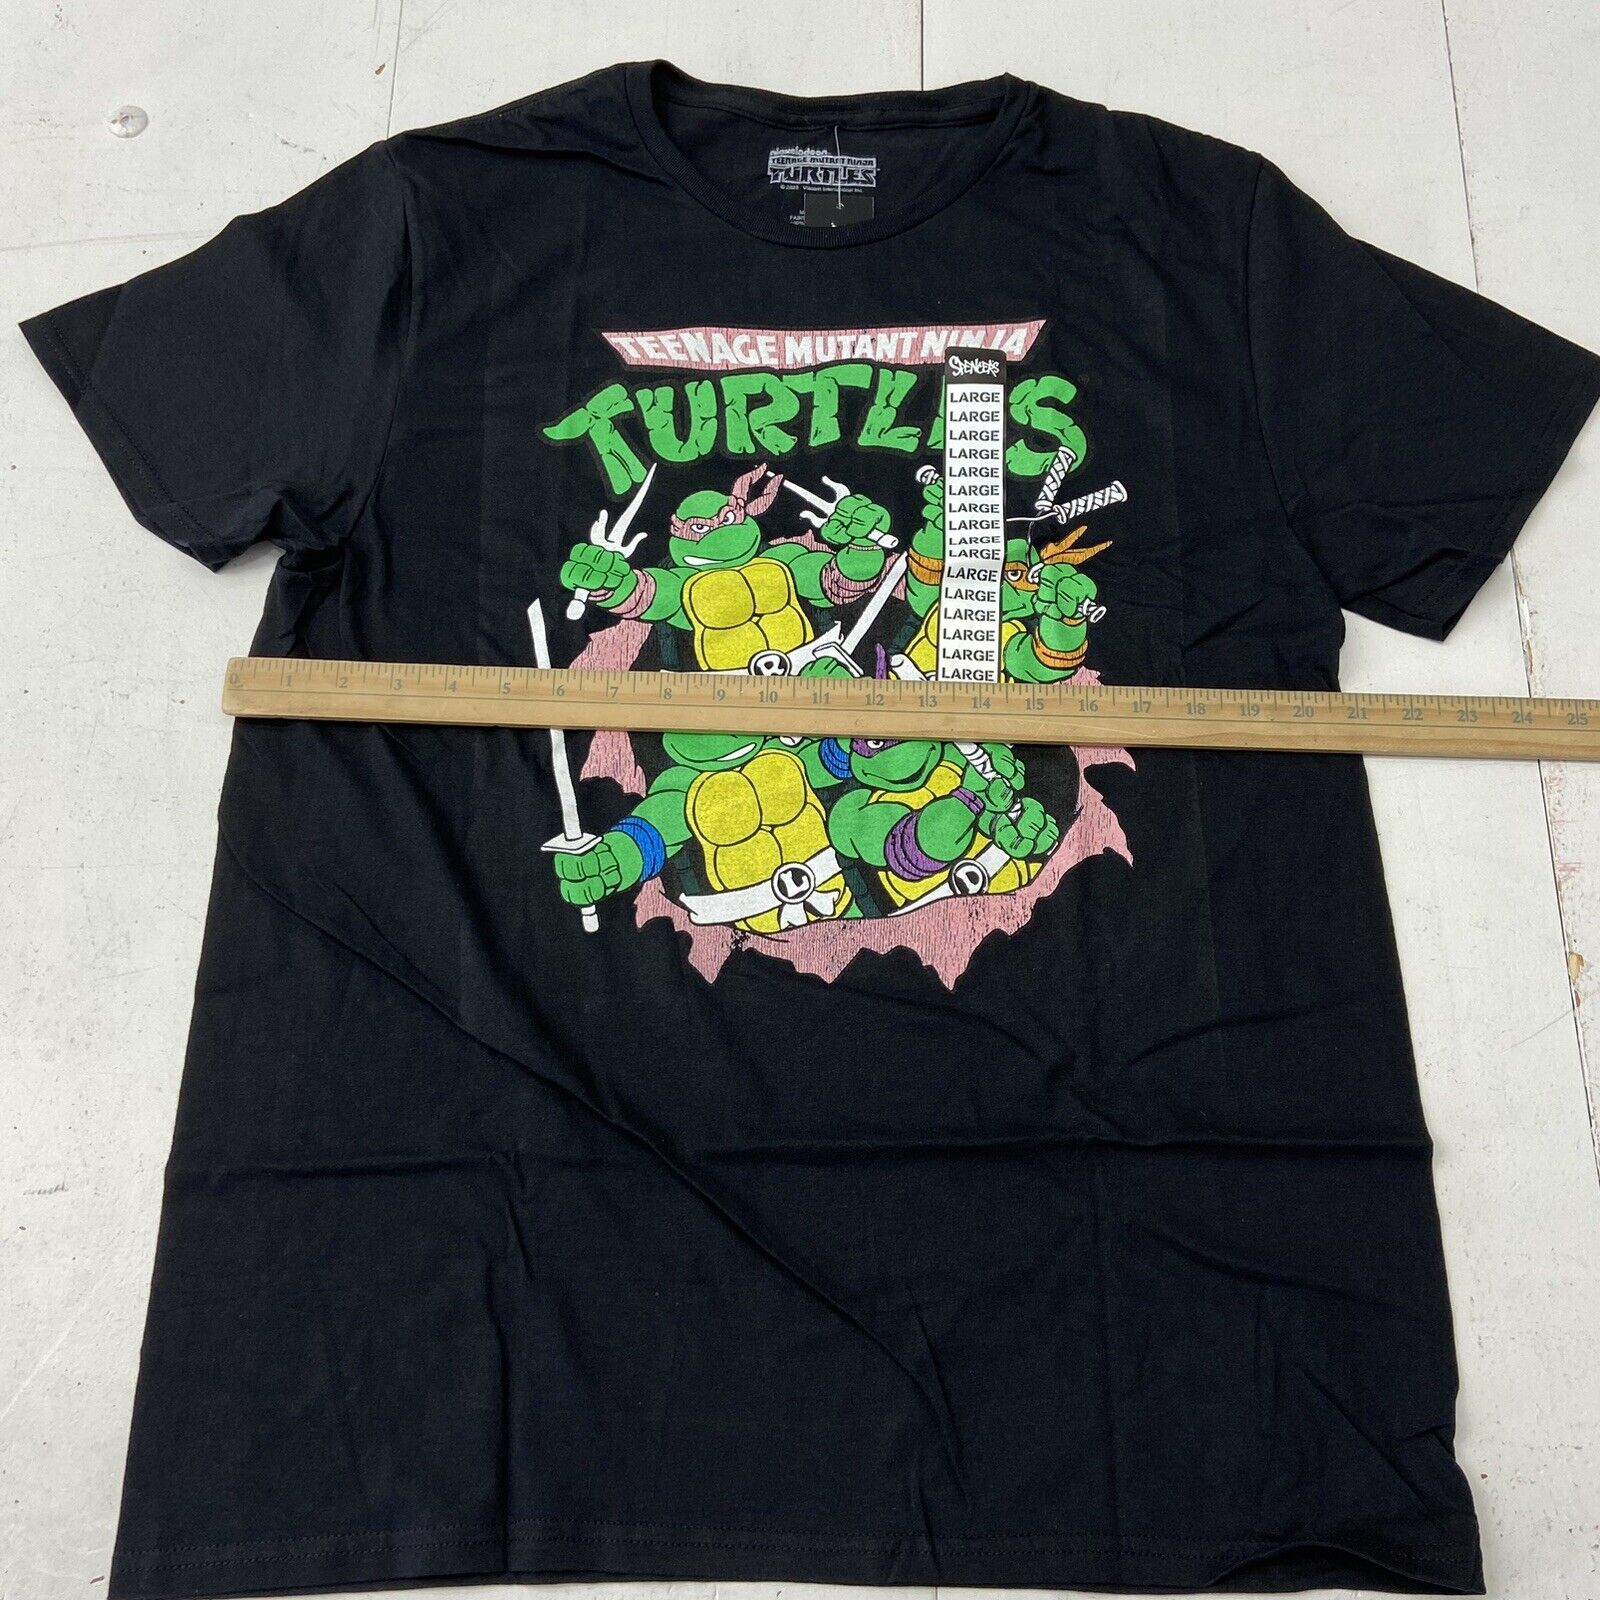 Teenage Mutant Ninja Turtles Donnie Arcade Ninja Adult Short Sleeve T-Shirt Black Heather / M